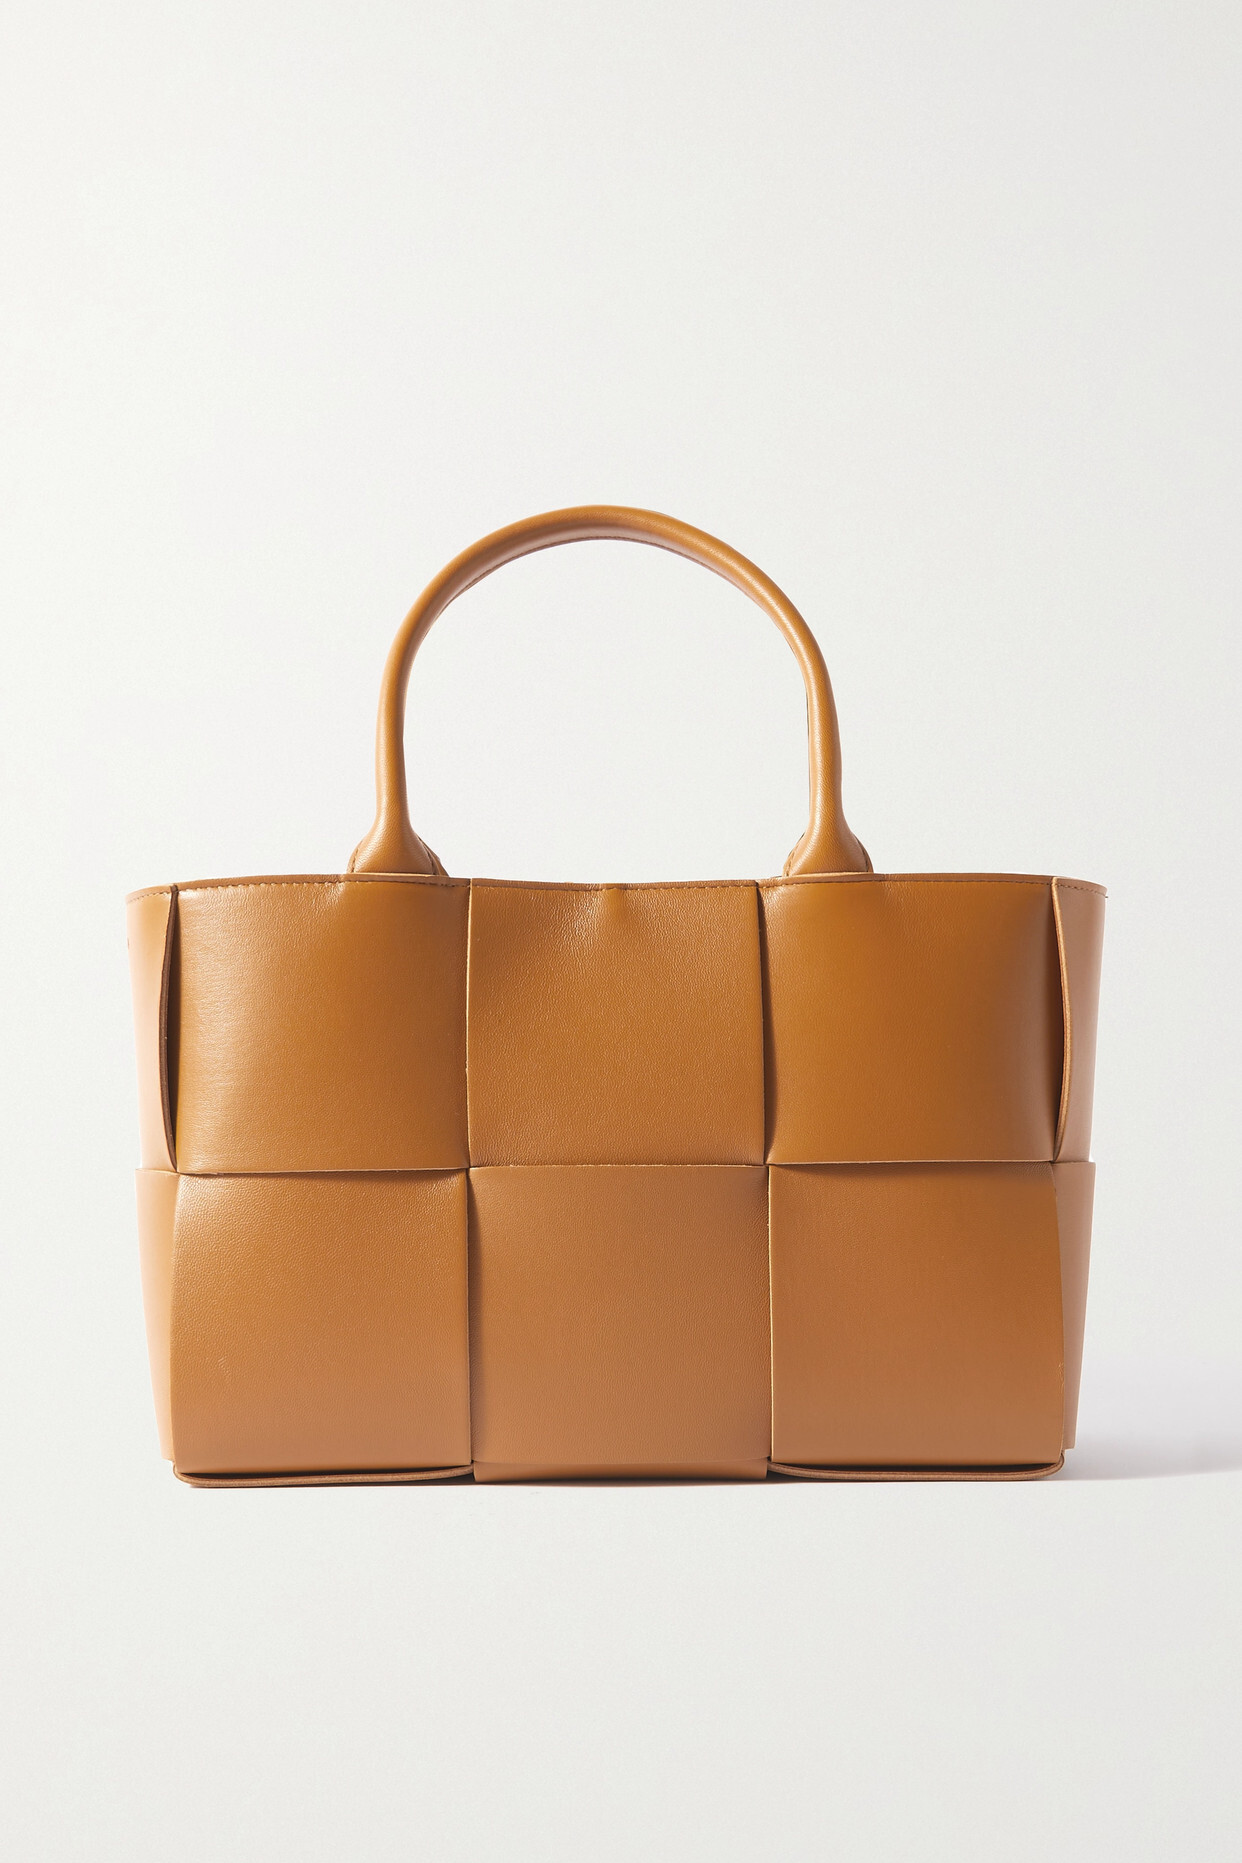 Bottega Veneta - Arco Small Intrecciato Leather Tote - Brown